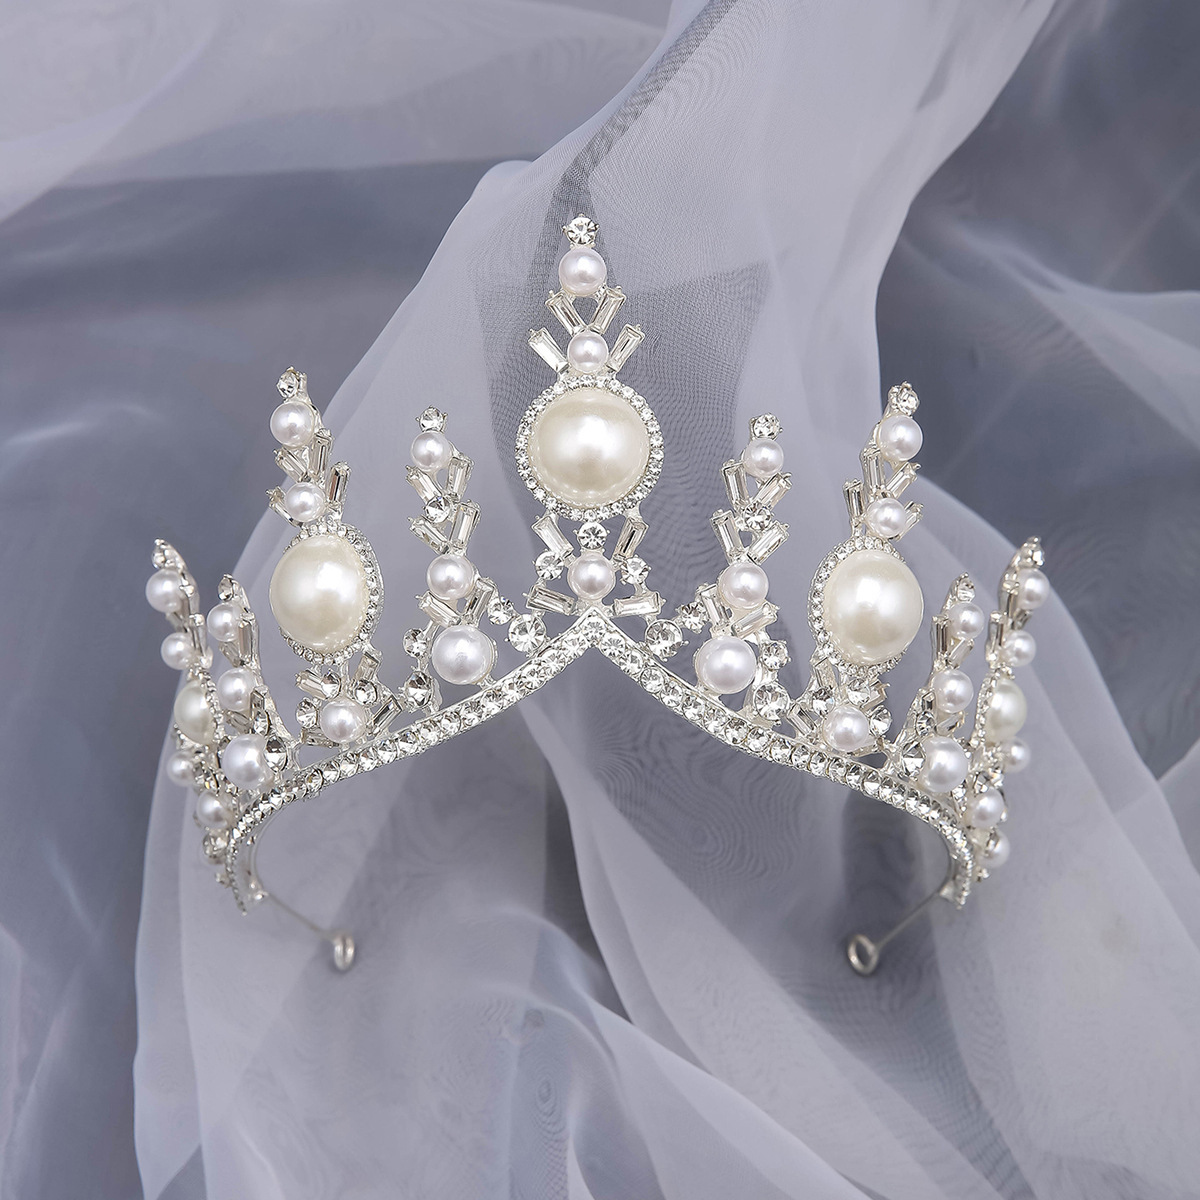 1:Princess pearl tiara